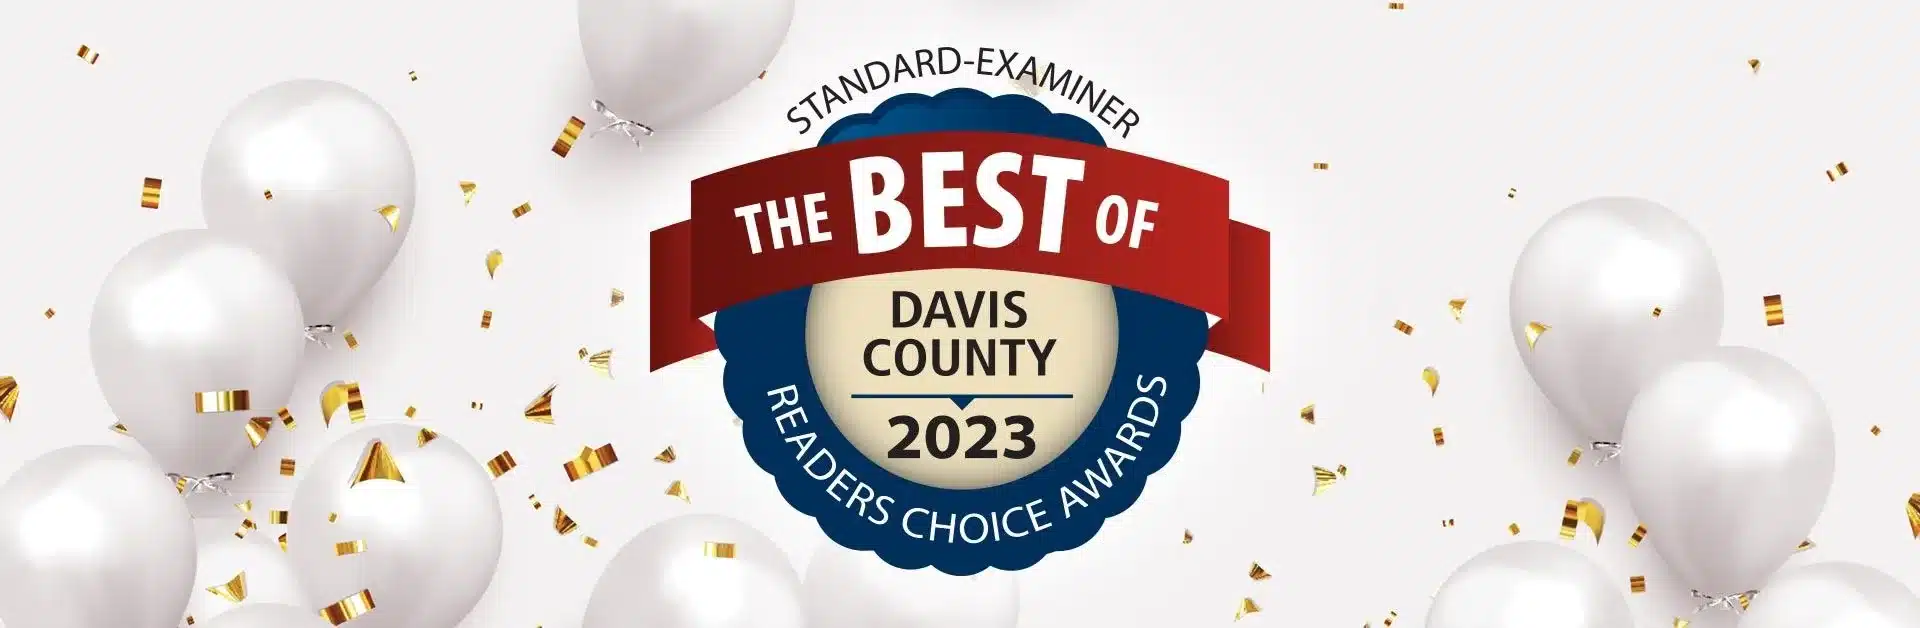 Standard-Examiner Best of Davis County 2023